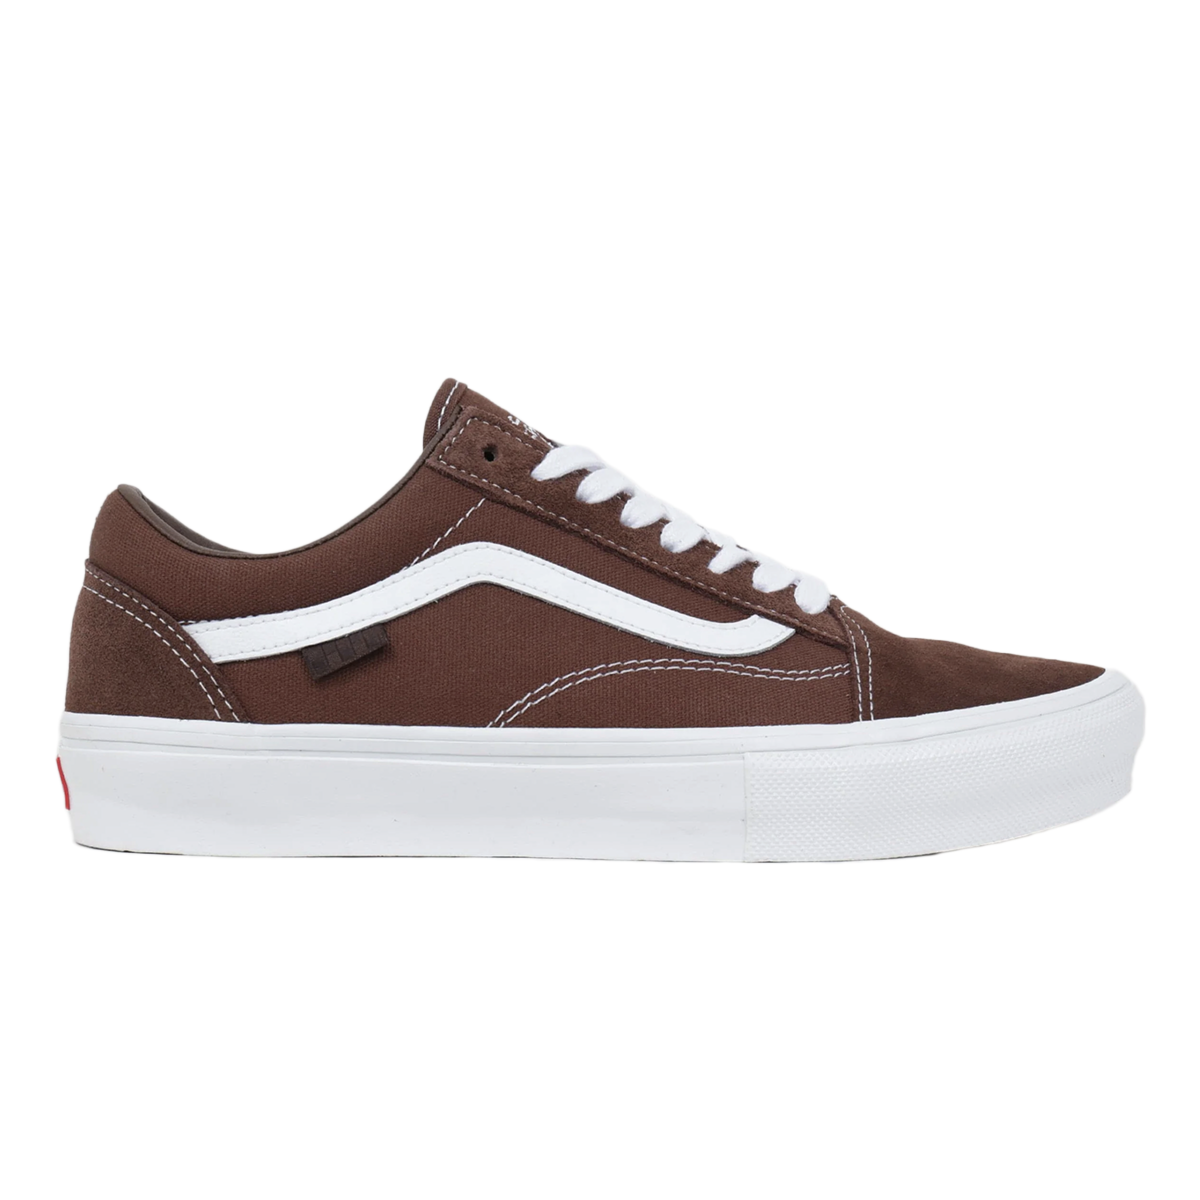 Vans Nick Michel Skate Old Skool Shoes - Brown/White